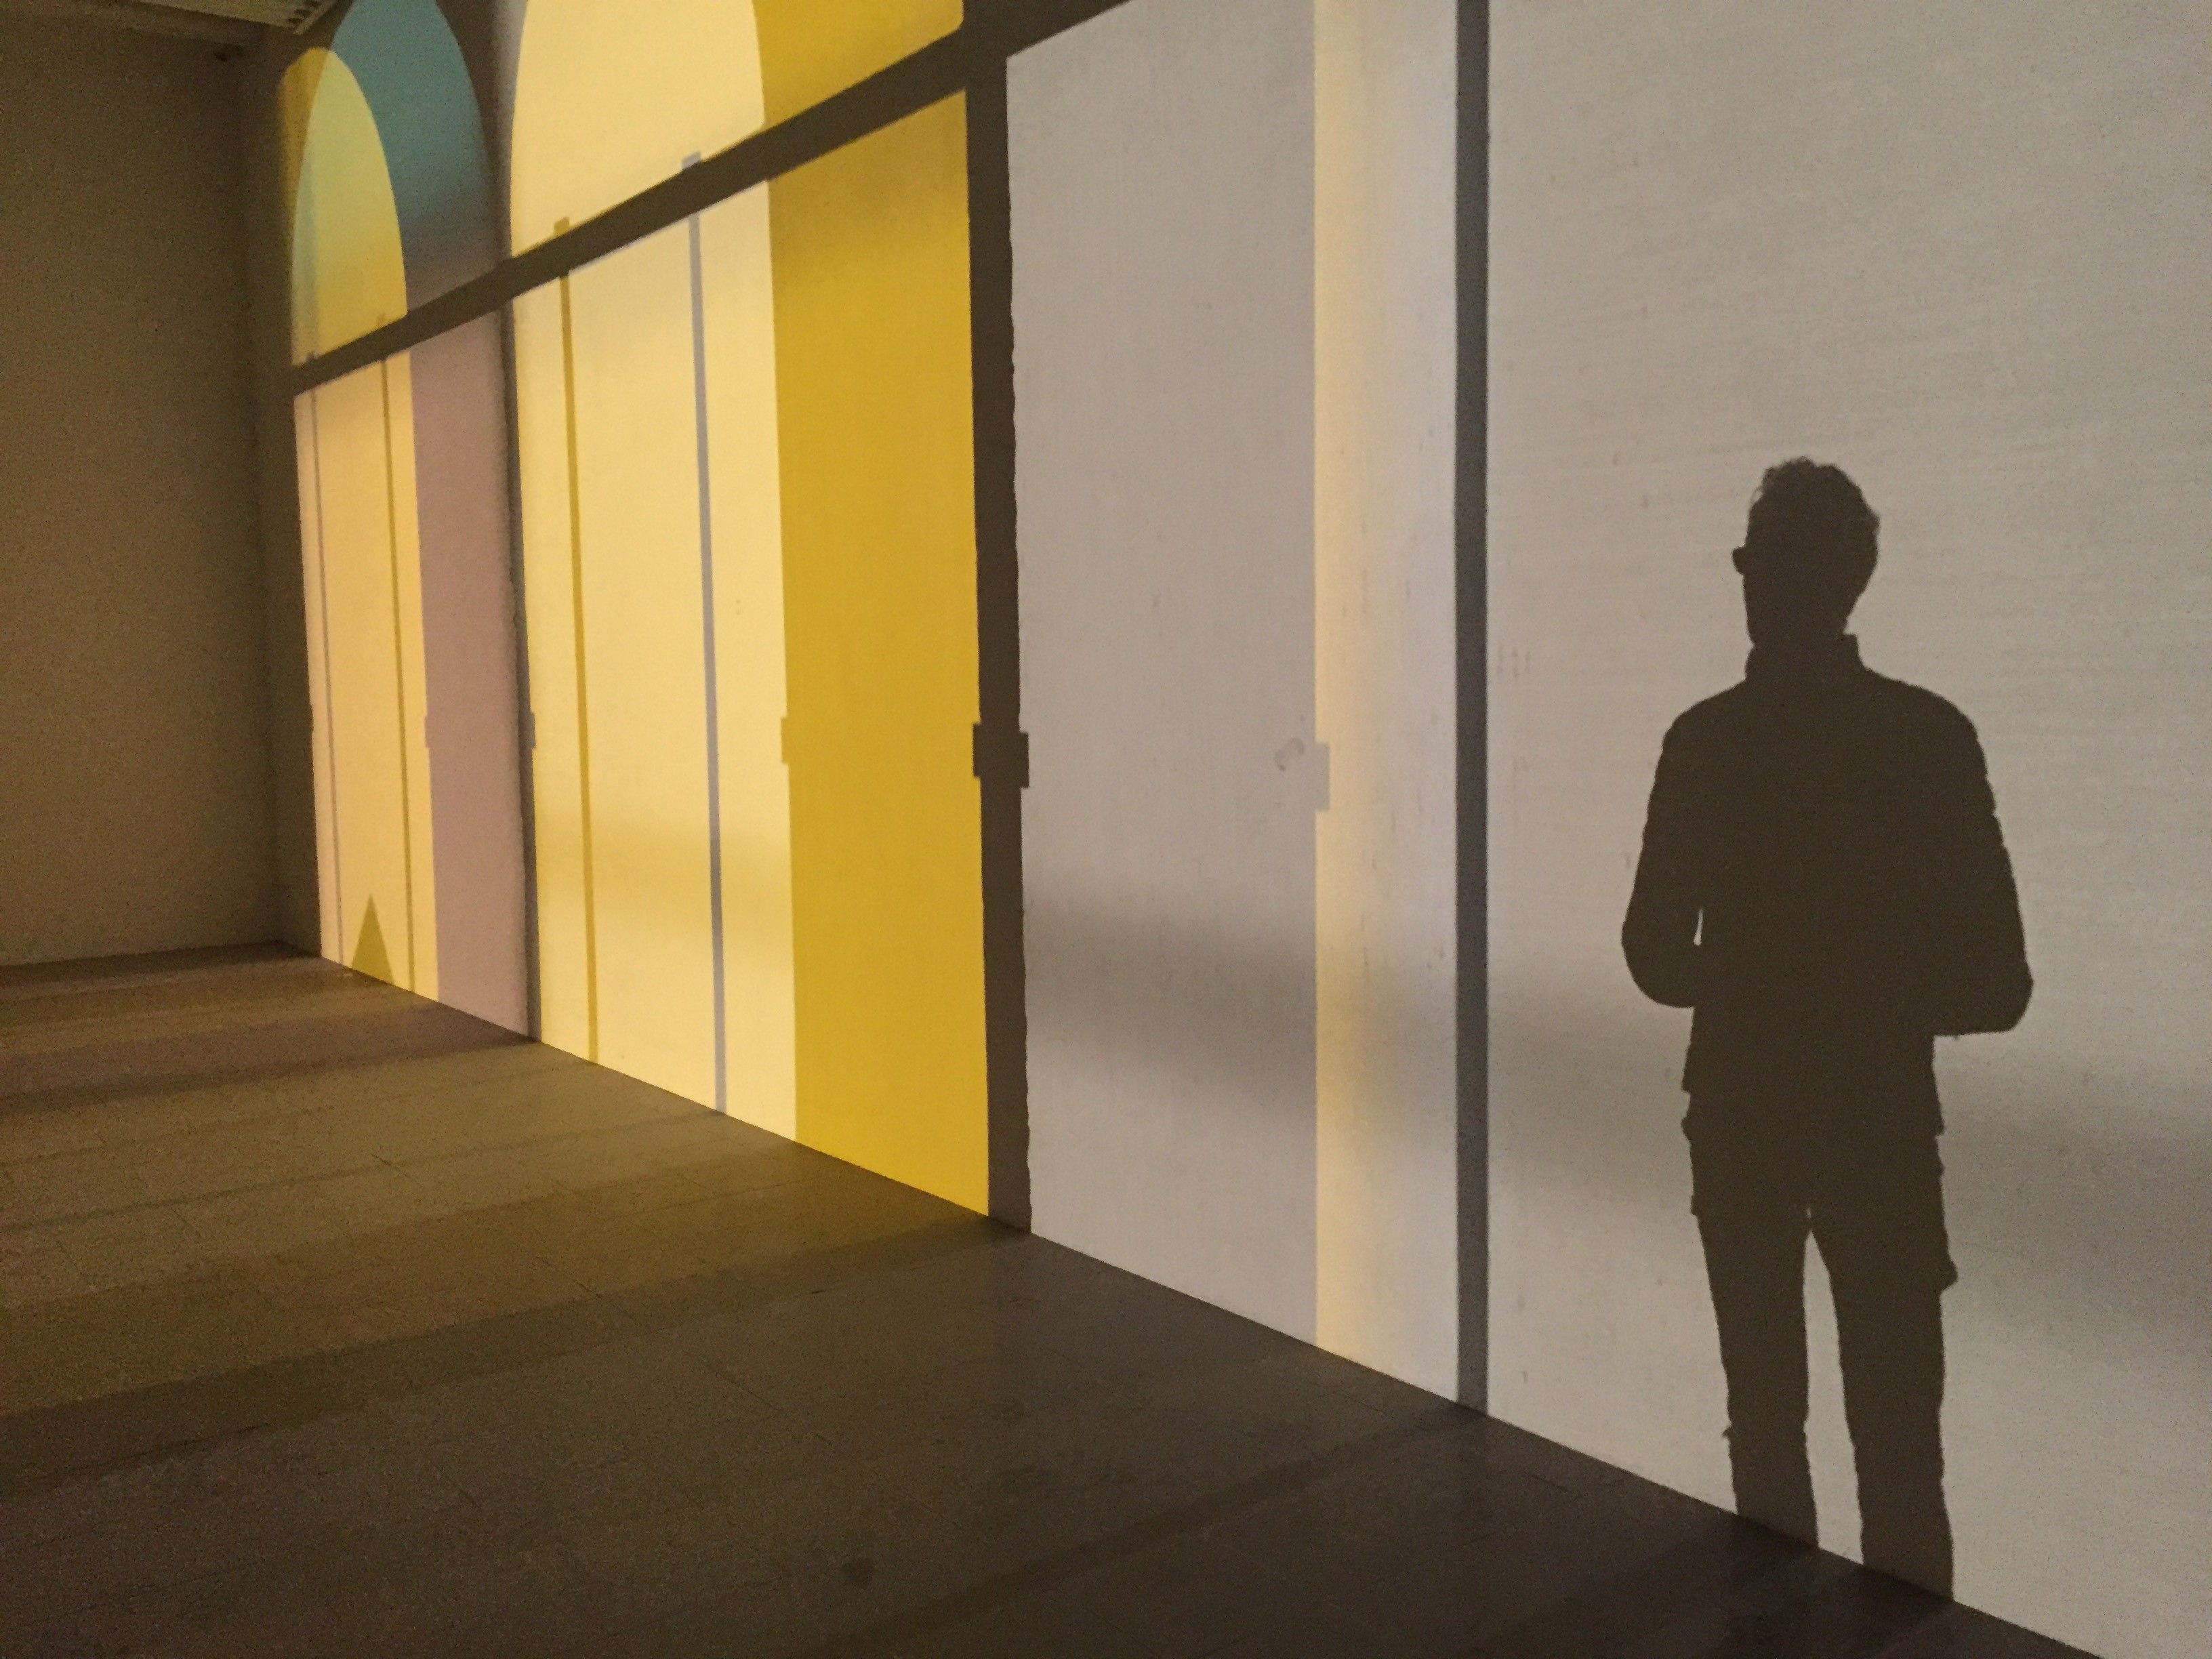 Vue d'une silhouette d'homme et de formes de fenêtres se détachant sur un mur grâce à un éclairage particulier.